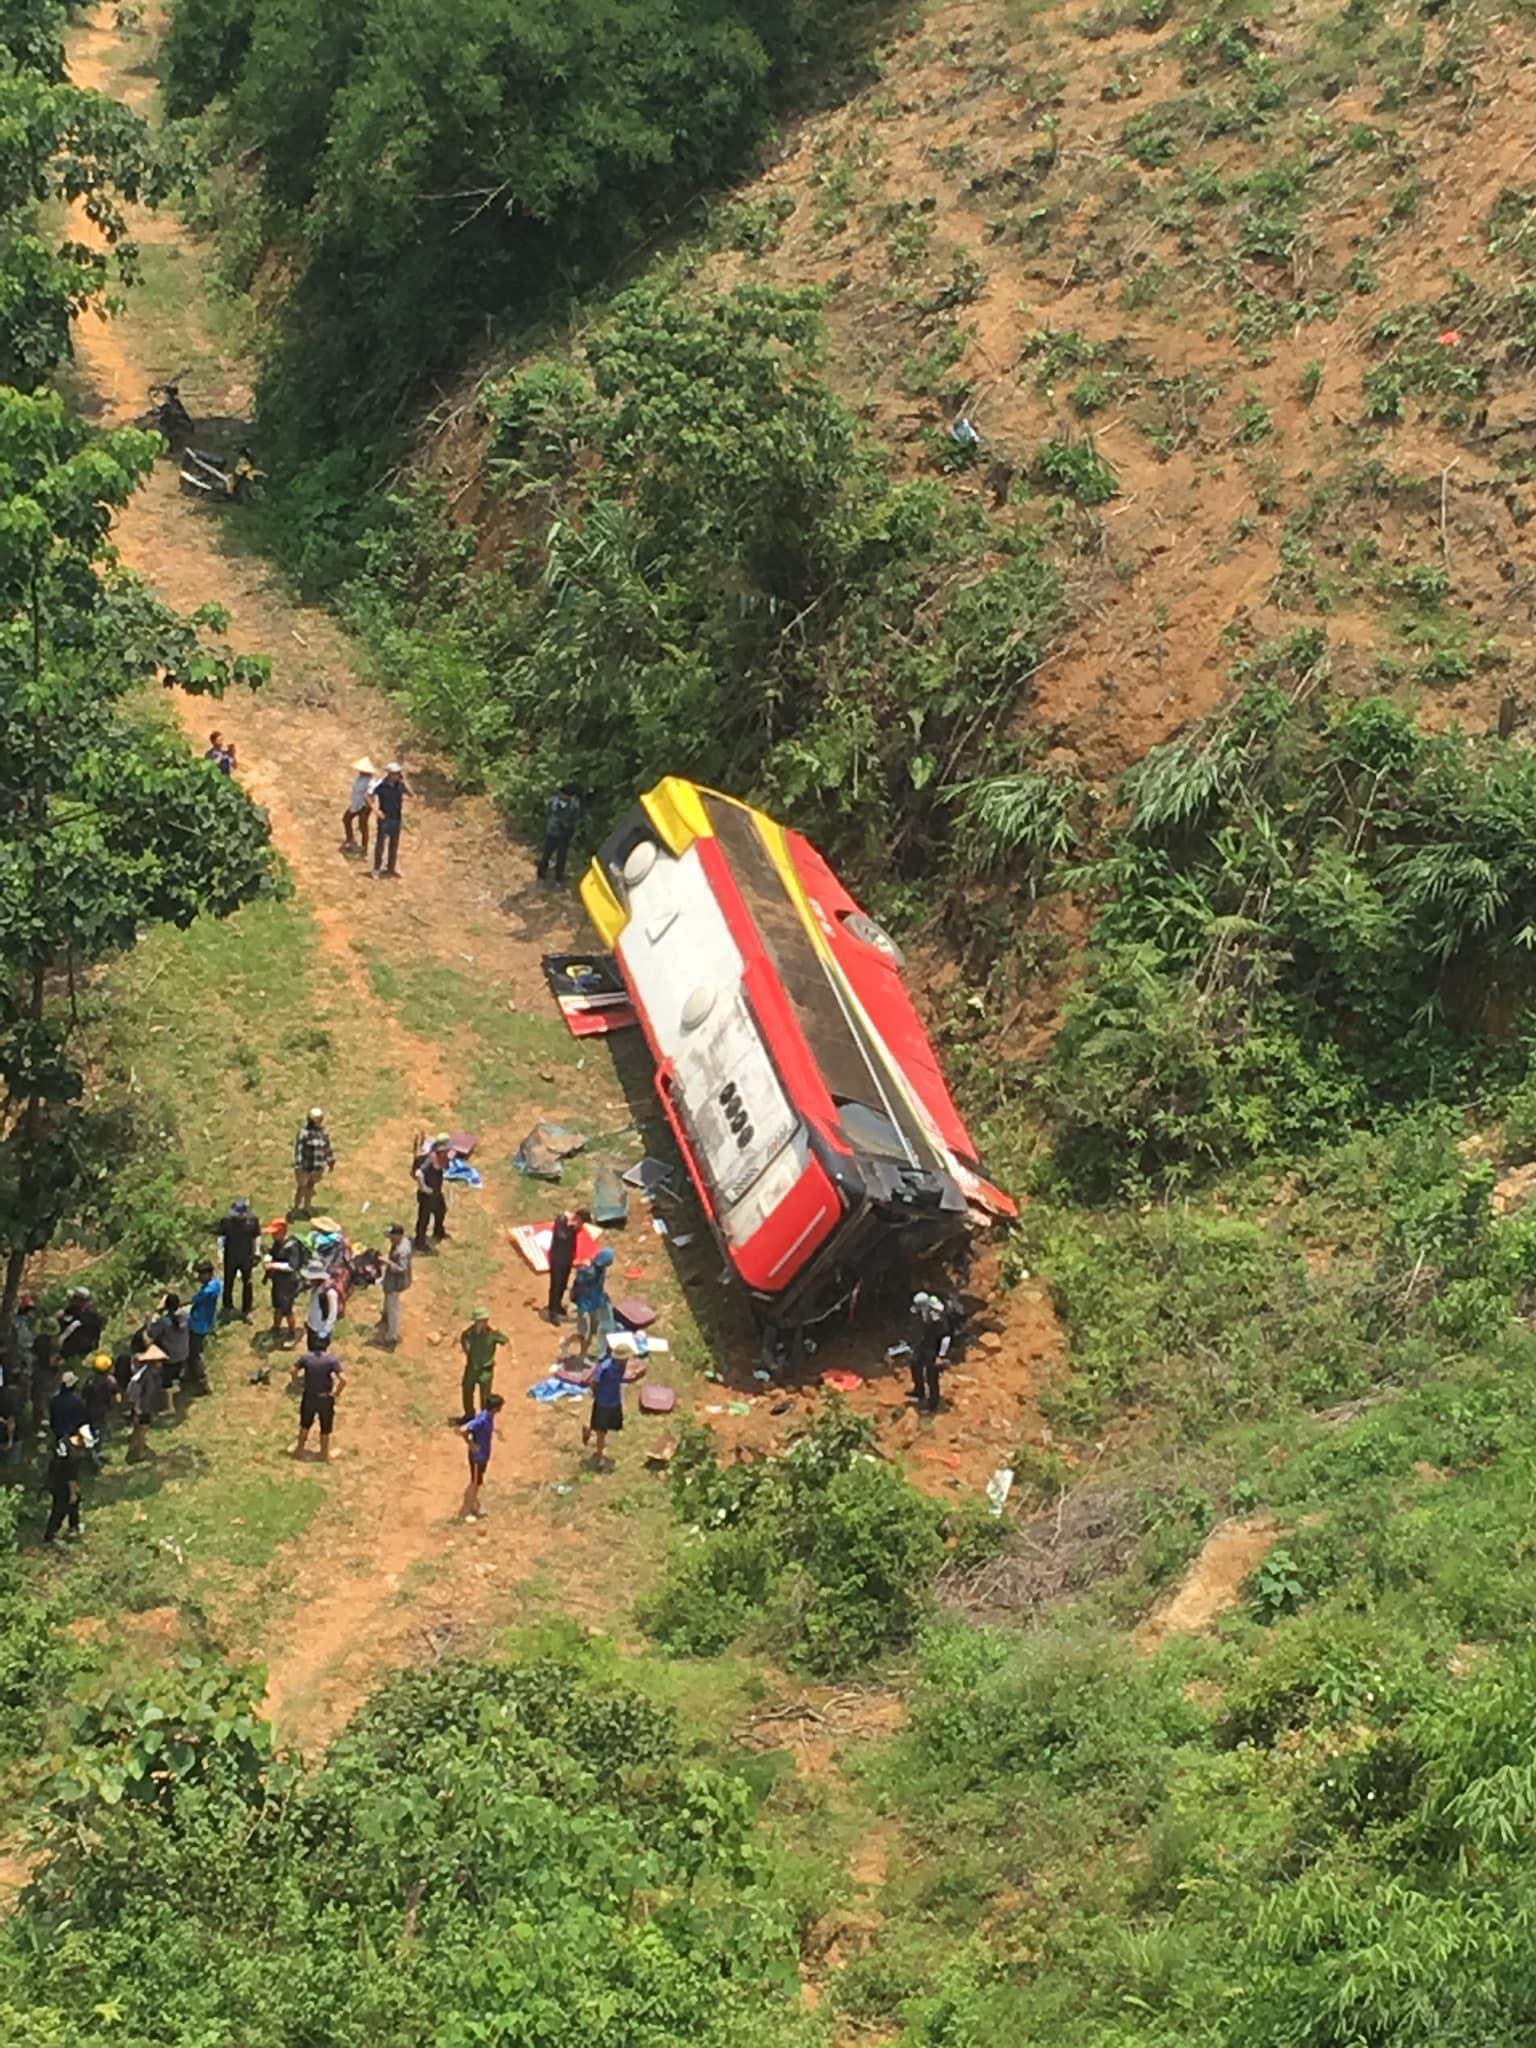 Xe du lịch chở khách người nước ngoài lao xuống sườn đồi ở Phú Thọ, 3 người bị thương